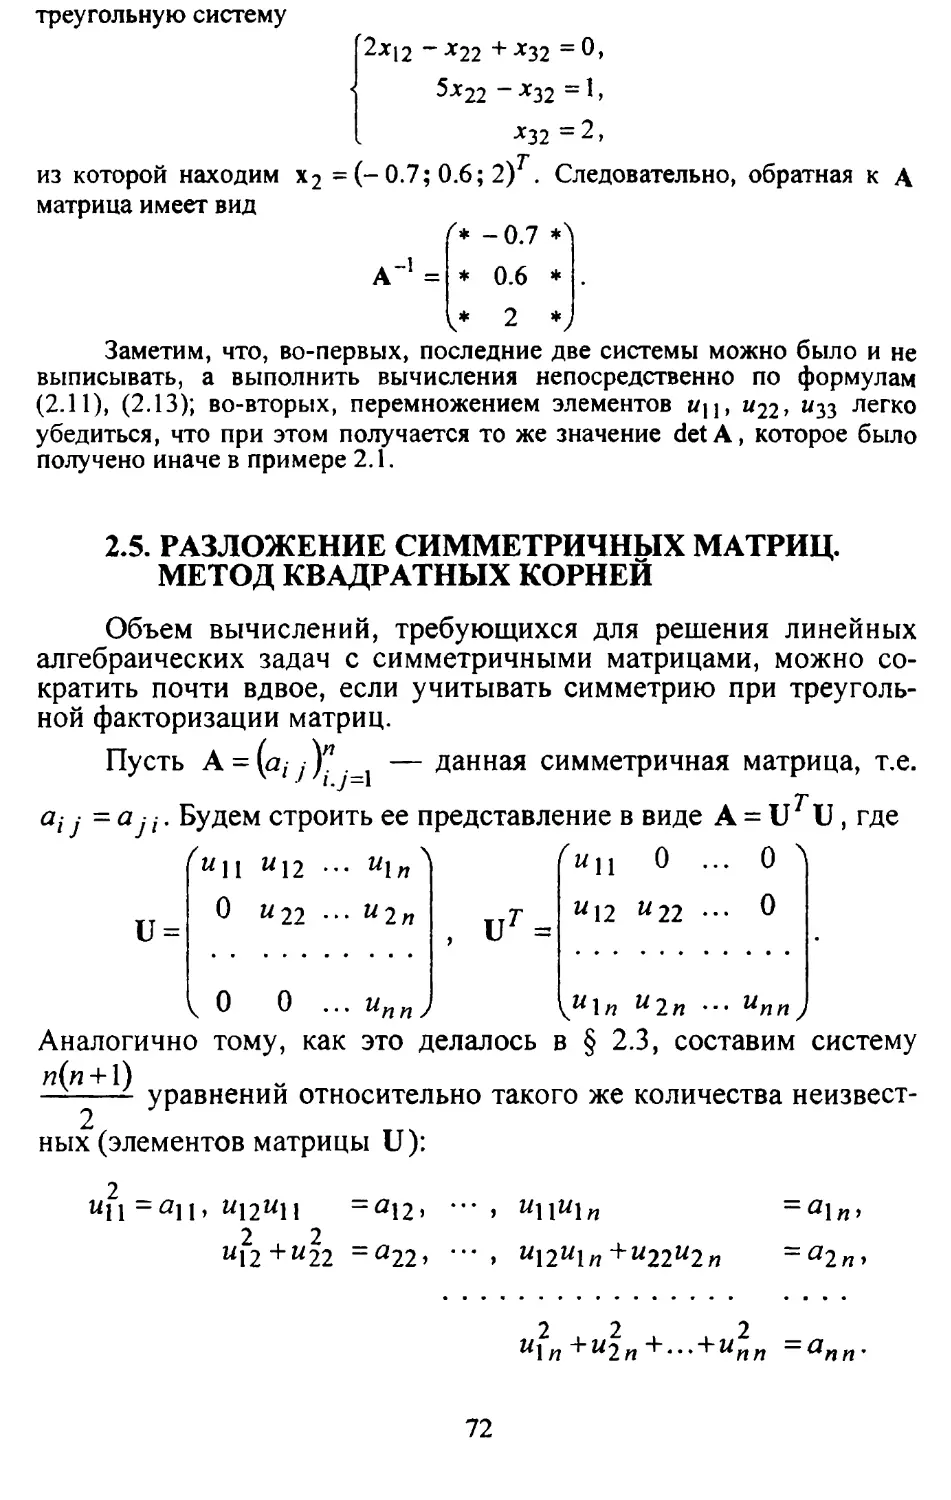 2.5. Разложение симметричных матриц. Метод квадратных корней